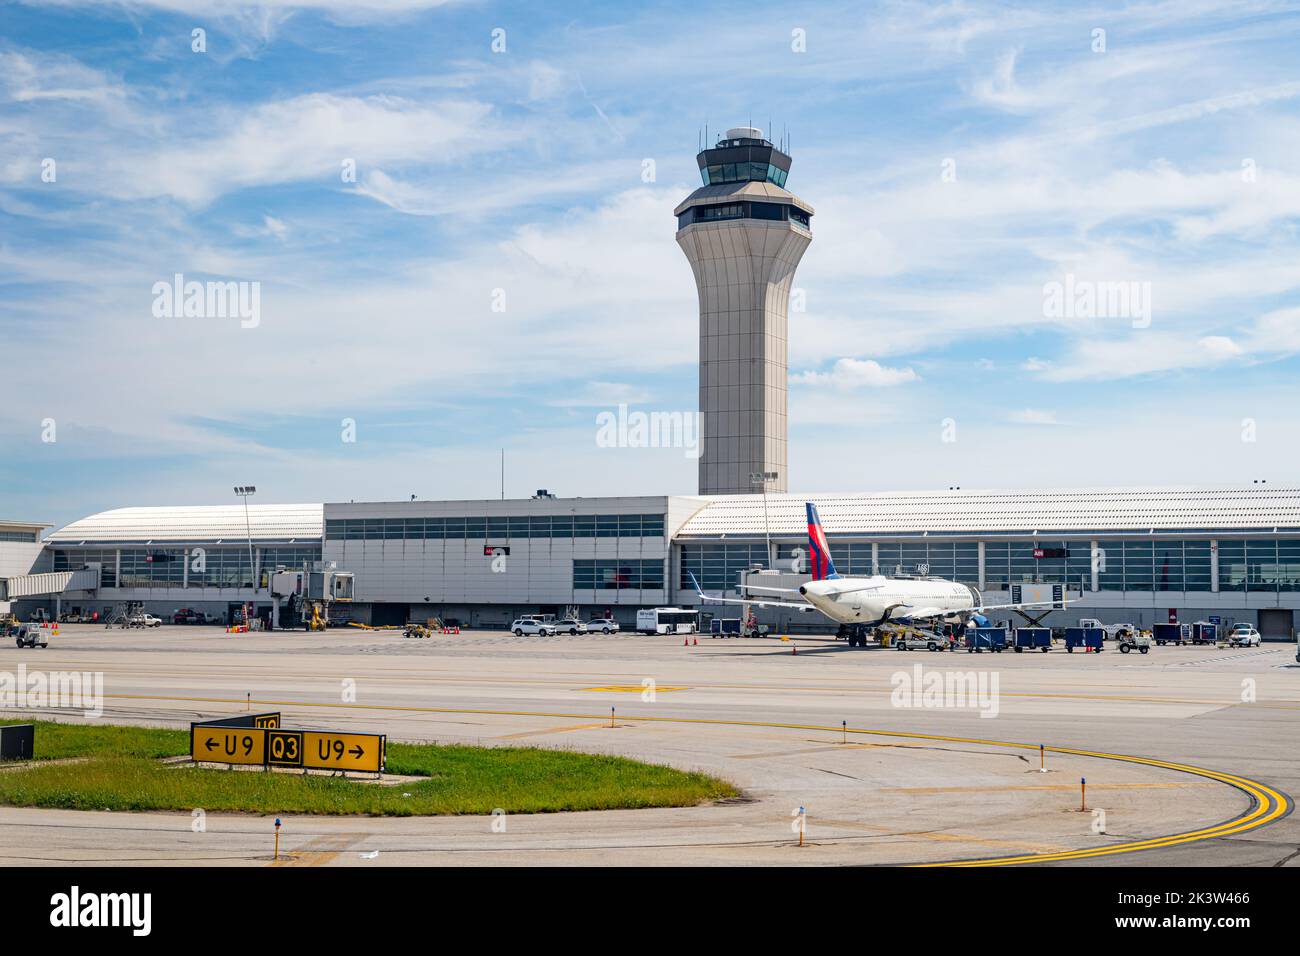 Ein Delta Airlines Airbus A321-211 parkte vor dem Terminal und dem Control Tower am Detroit Metropolitan Wayne County Airport (DTW) in Detroit, Mic Stockfoto